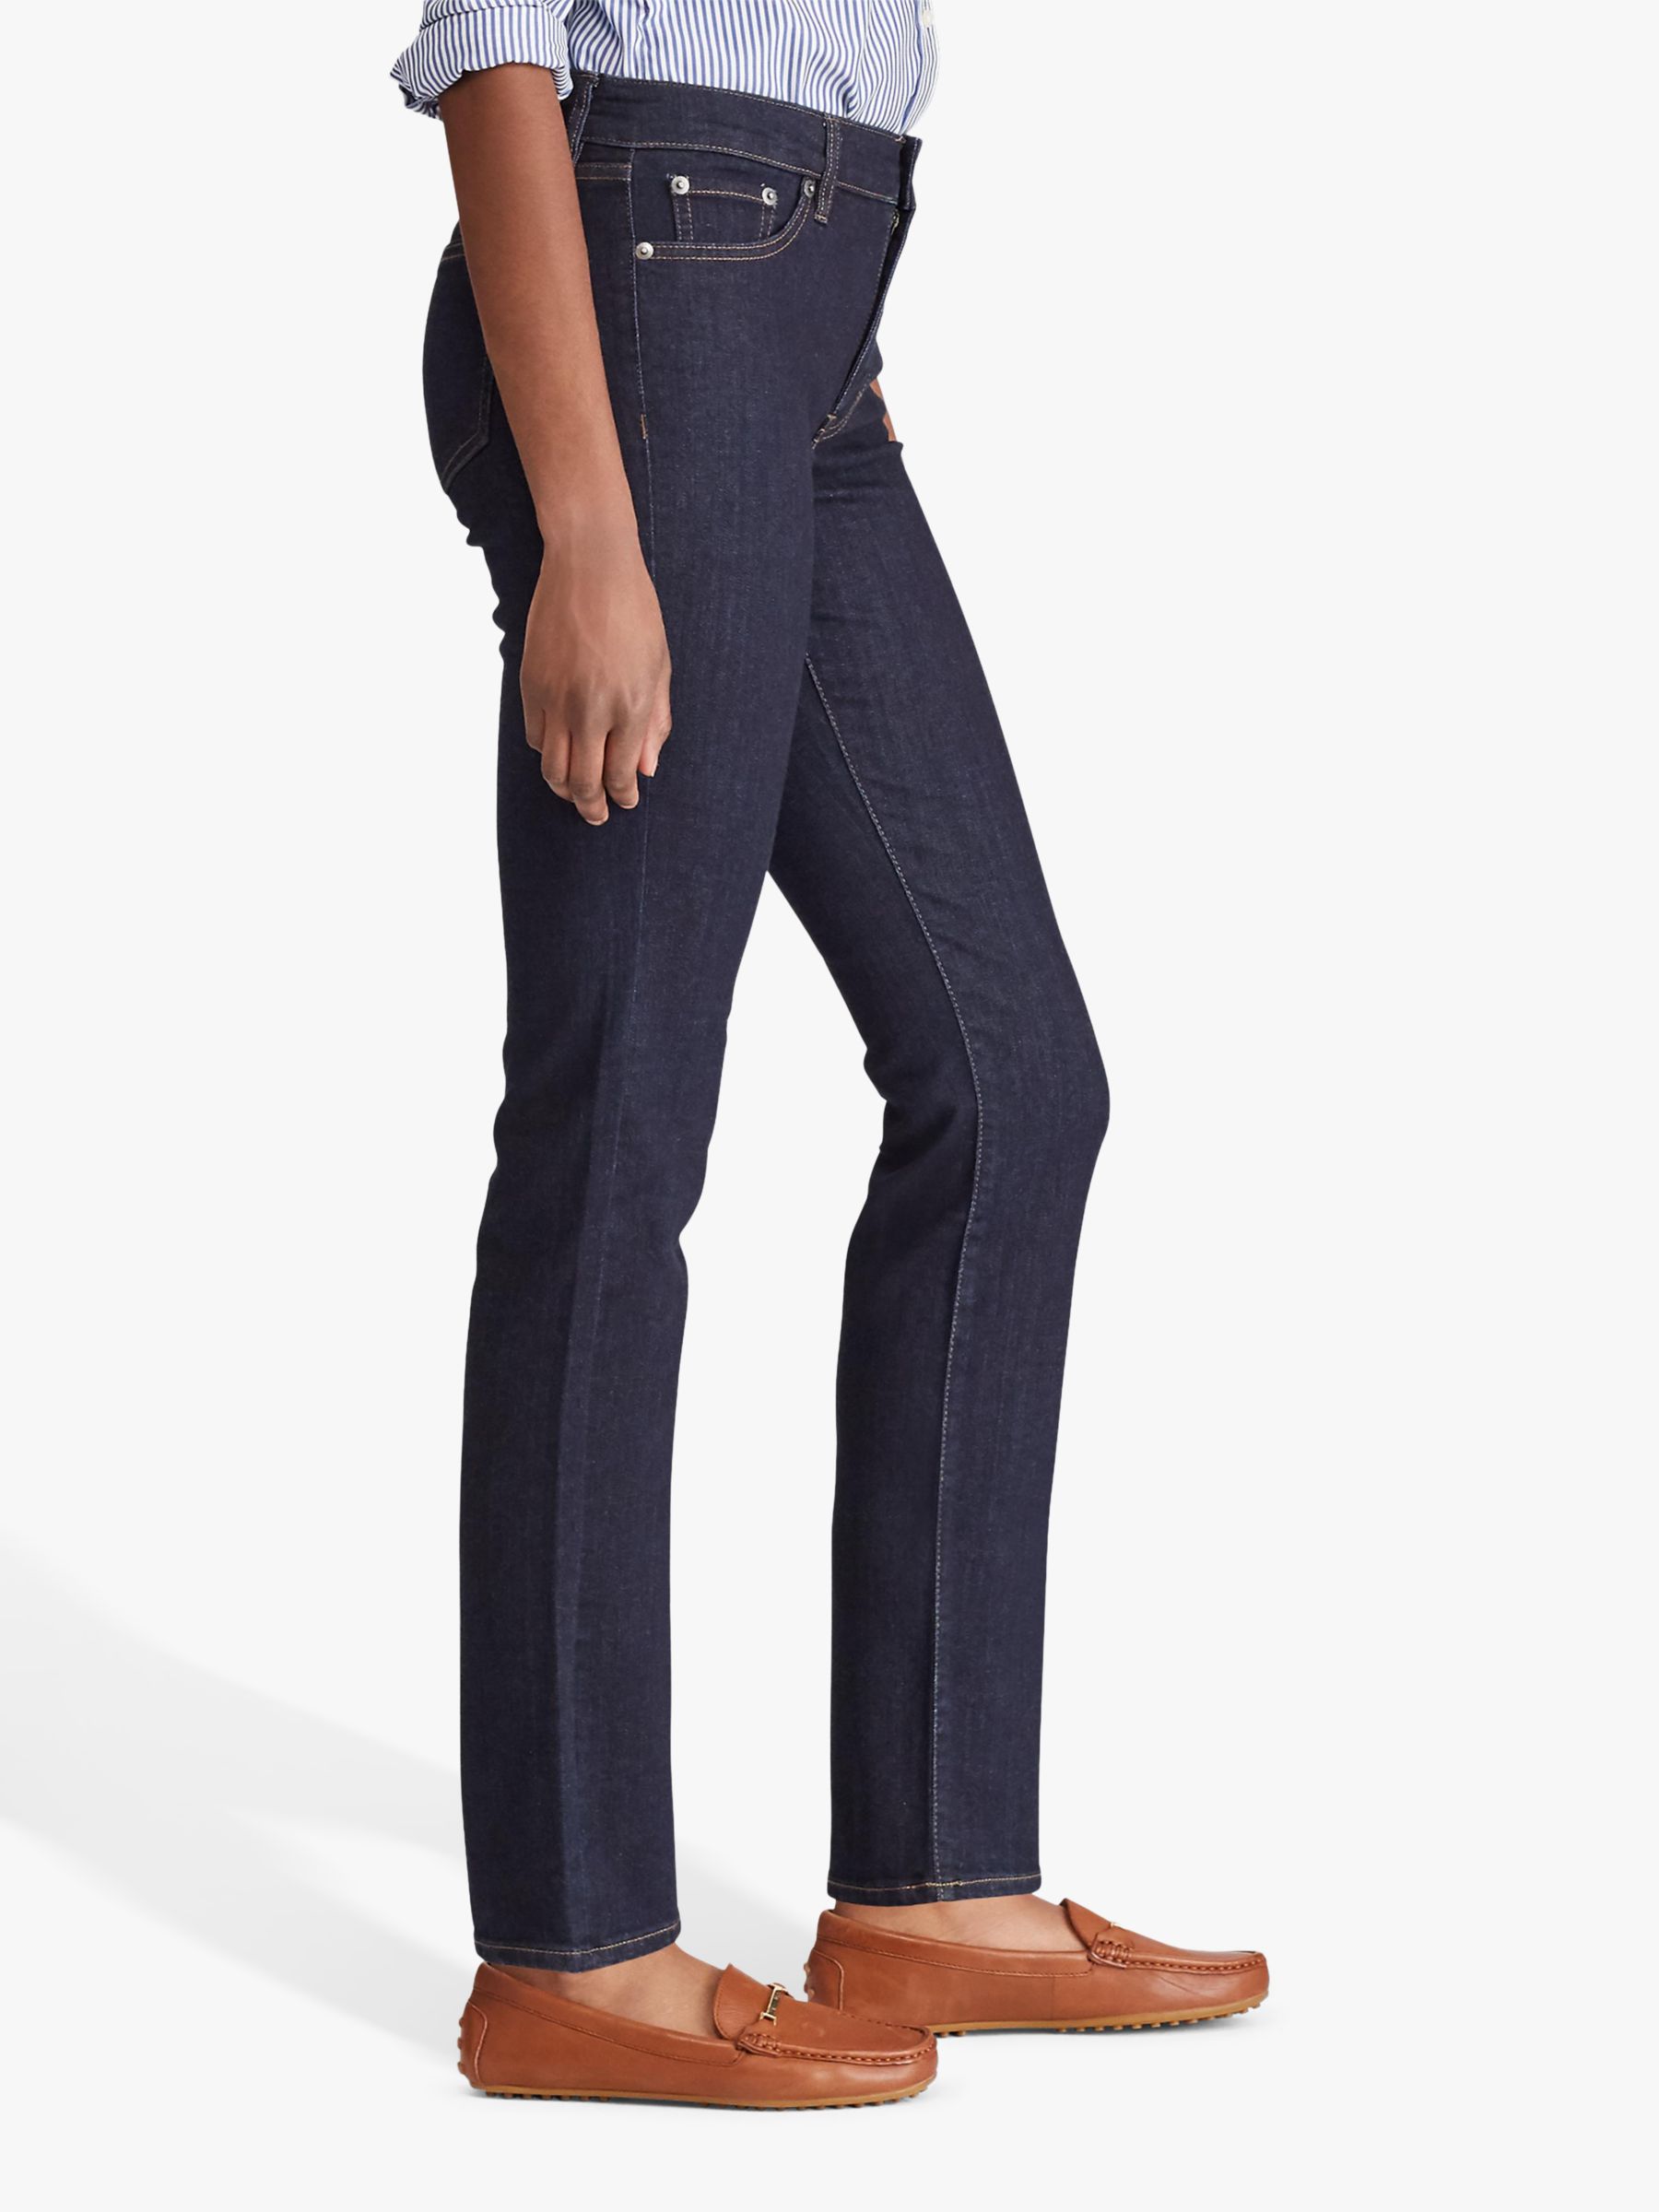 Lauren Ralph Lauren Premier Mid Rise Straight Leg Jeans, Dark Rinse Wash  Denim